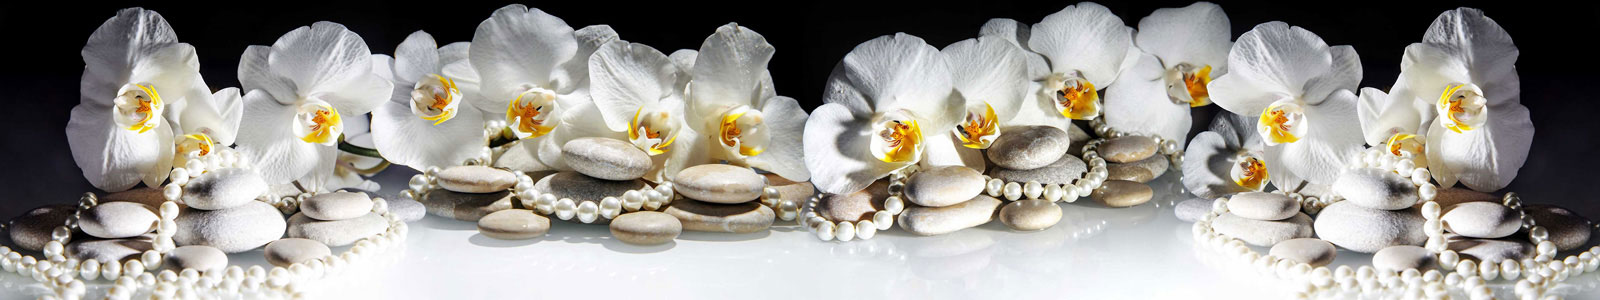 №6071 - Жемчуг у камней спа и белой орхидеи